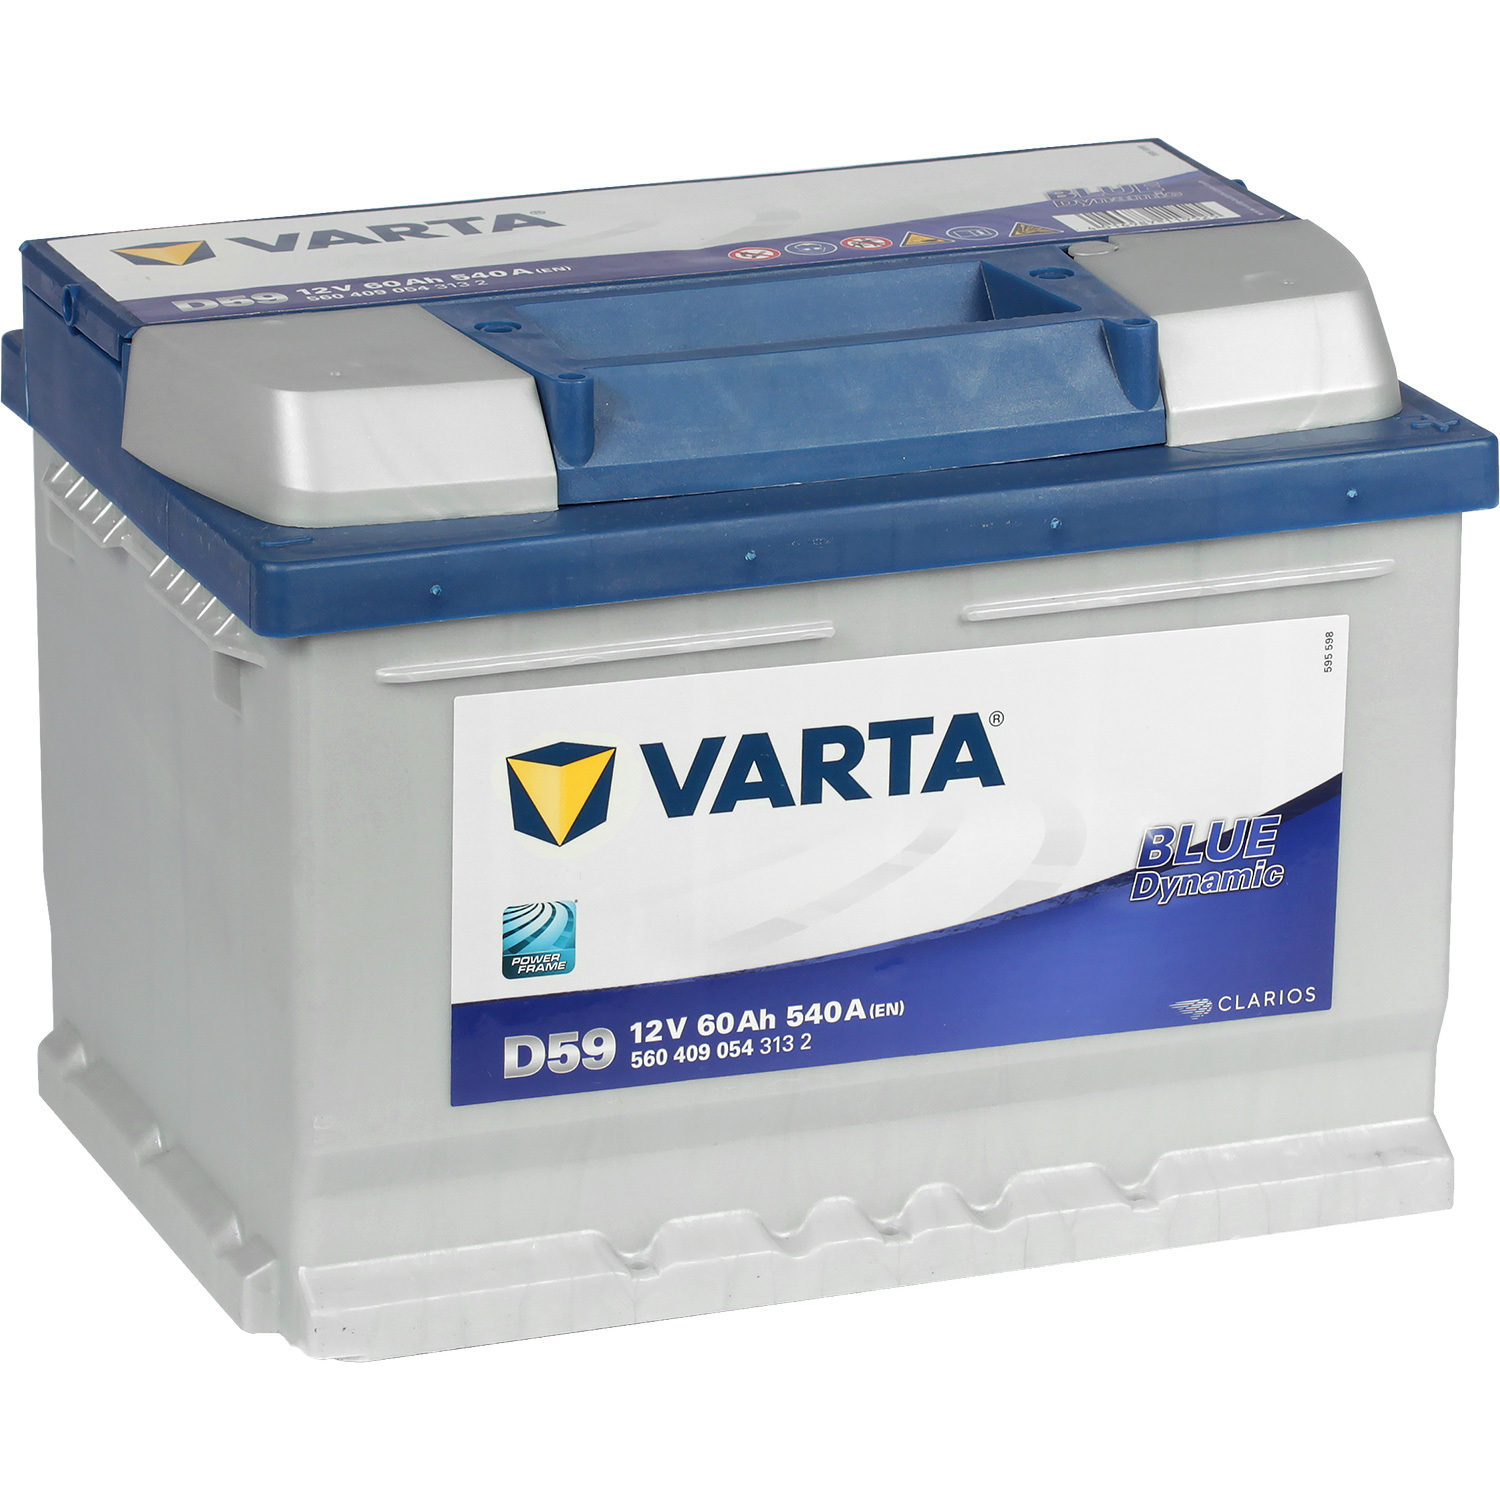 Varta Автомобильный аккумулятор Varta Blue Dynamic D59 60 Ач обратная полярность LB2 varta автомобильный аккумулятор varta blue dynamic b32 45 ач обратная полярность b24l